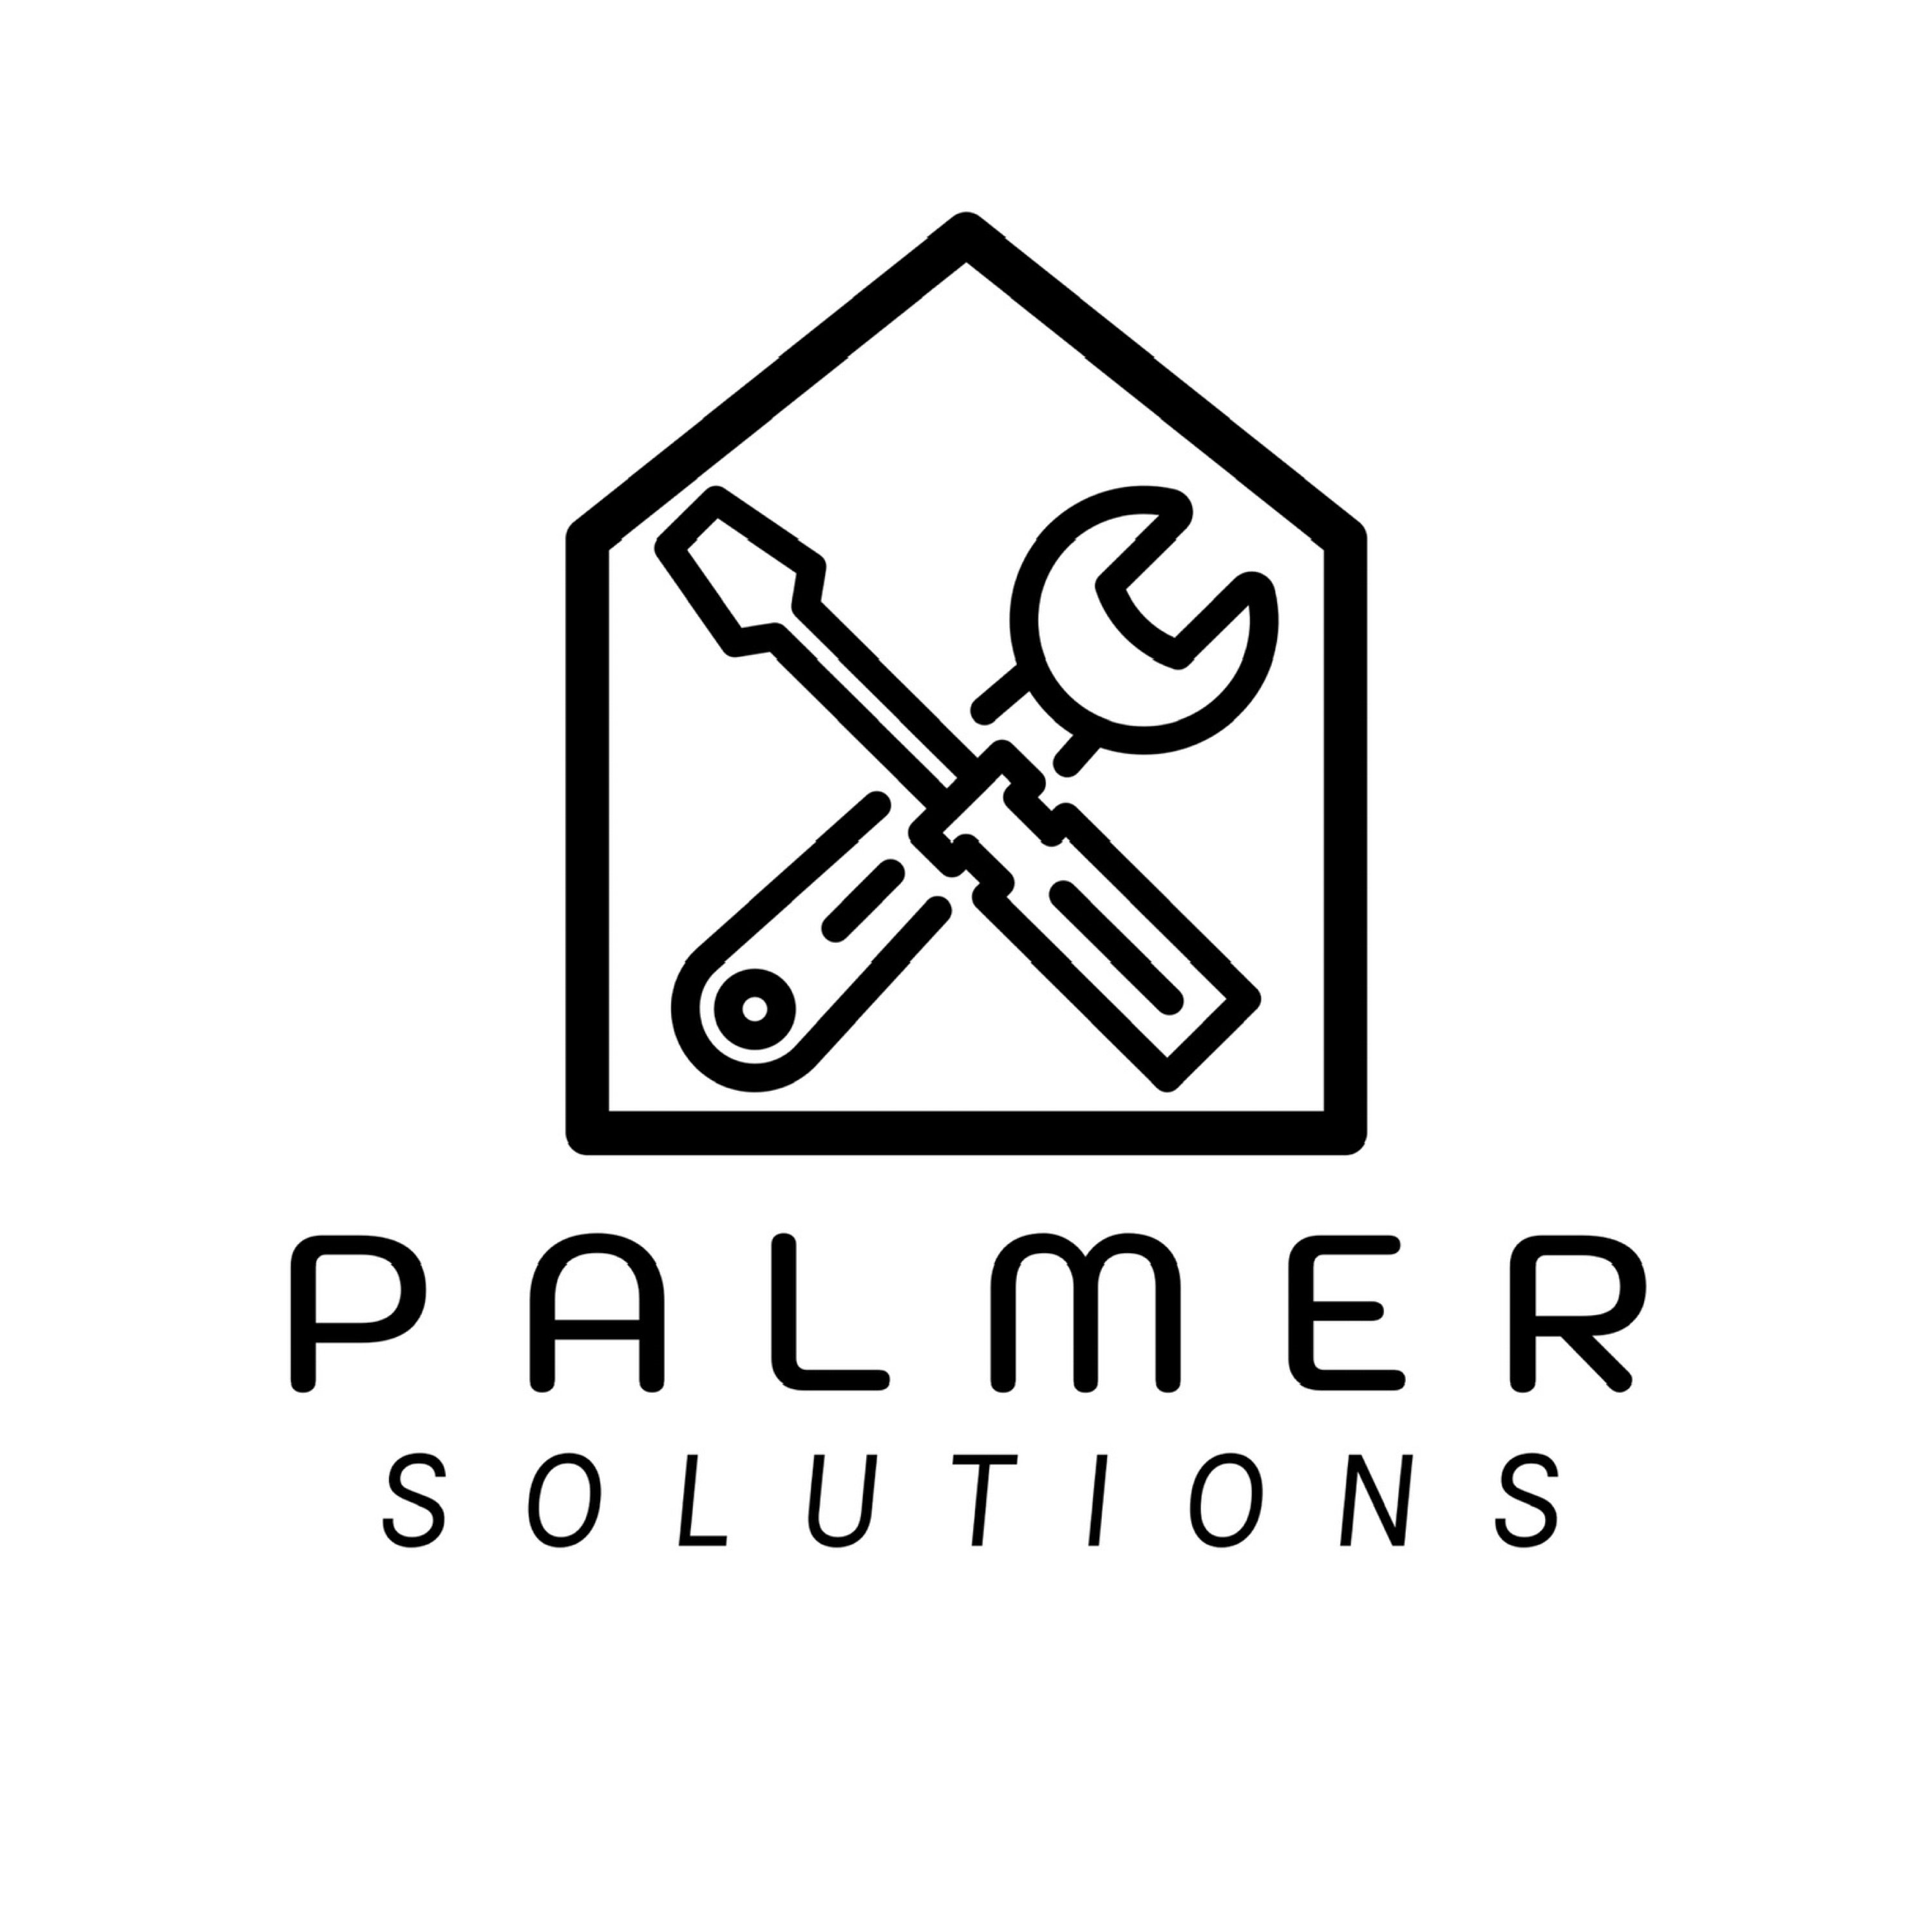 Palmer Solutions Logo